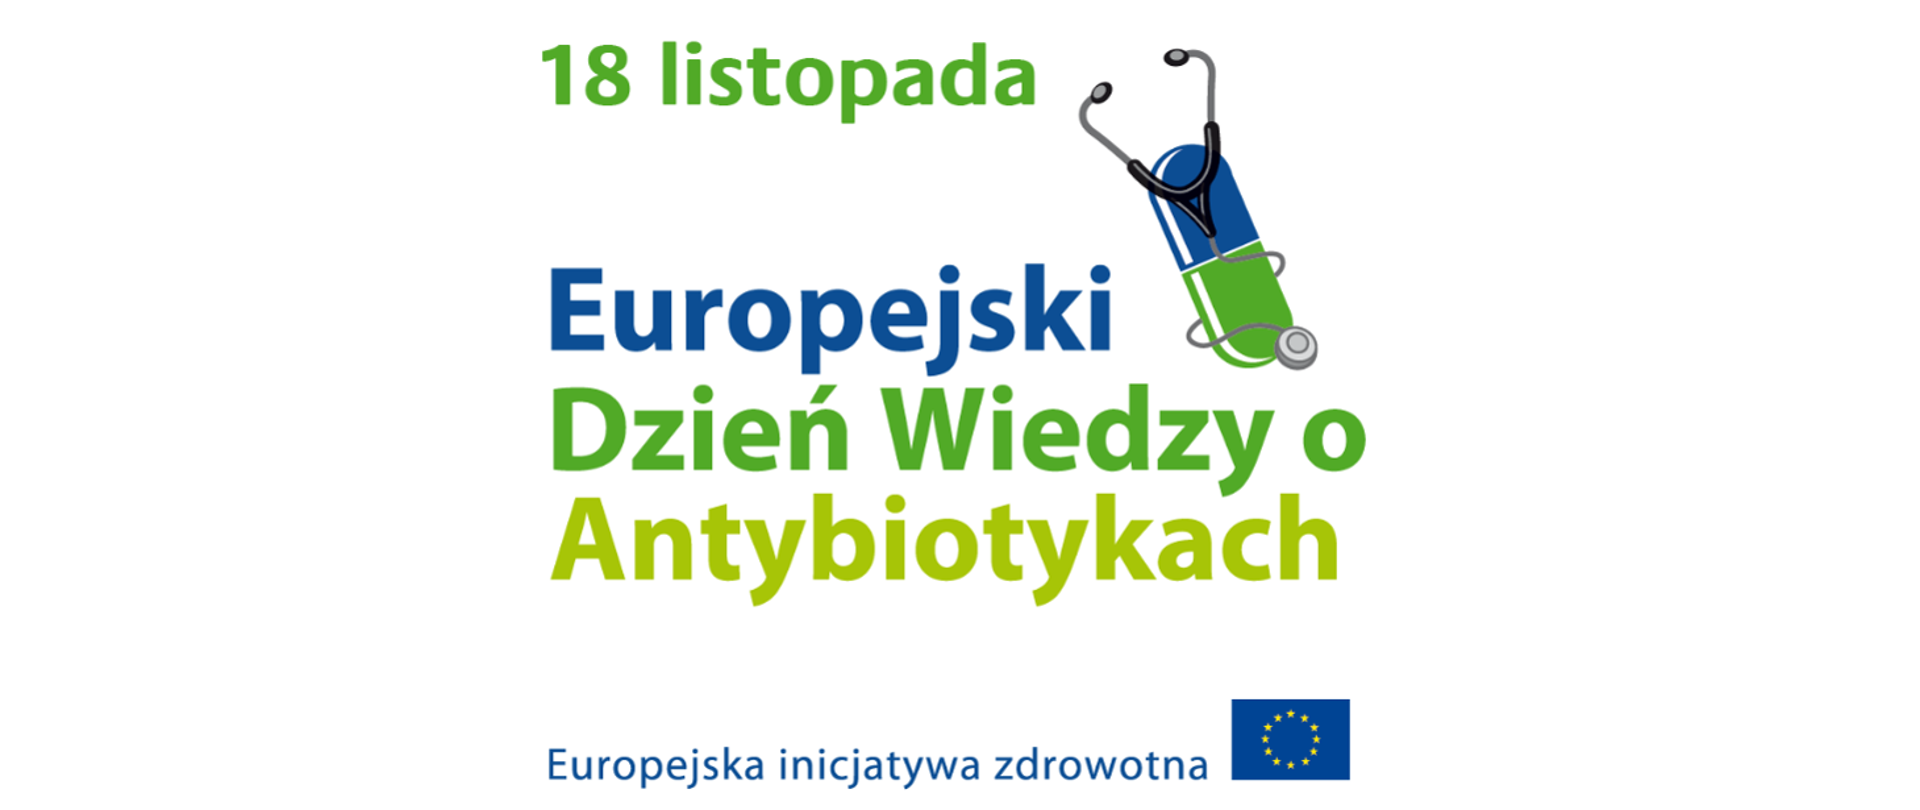 Europejski Dzień Wiedzy Antybiotykach